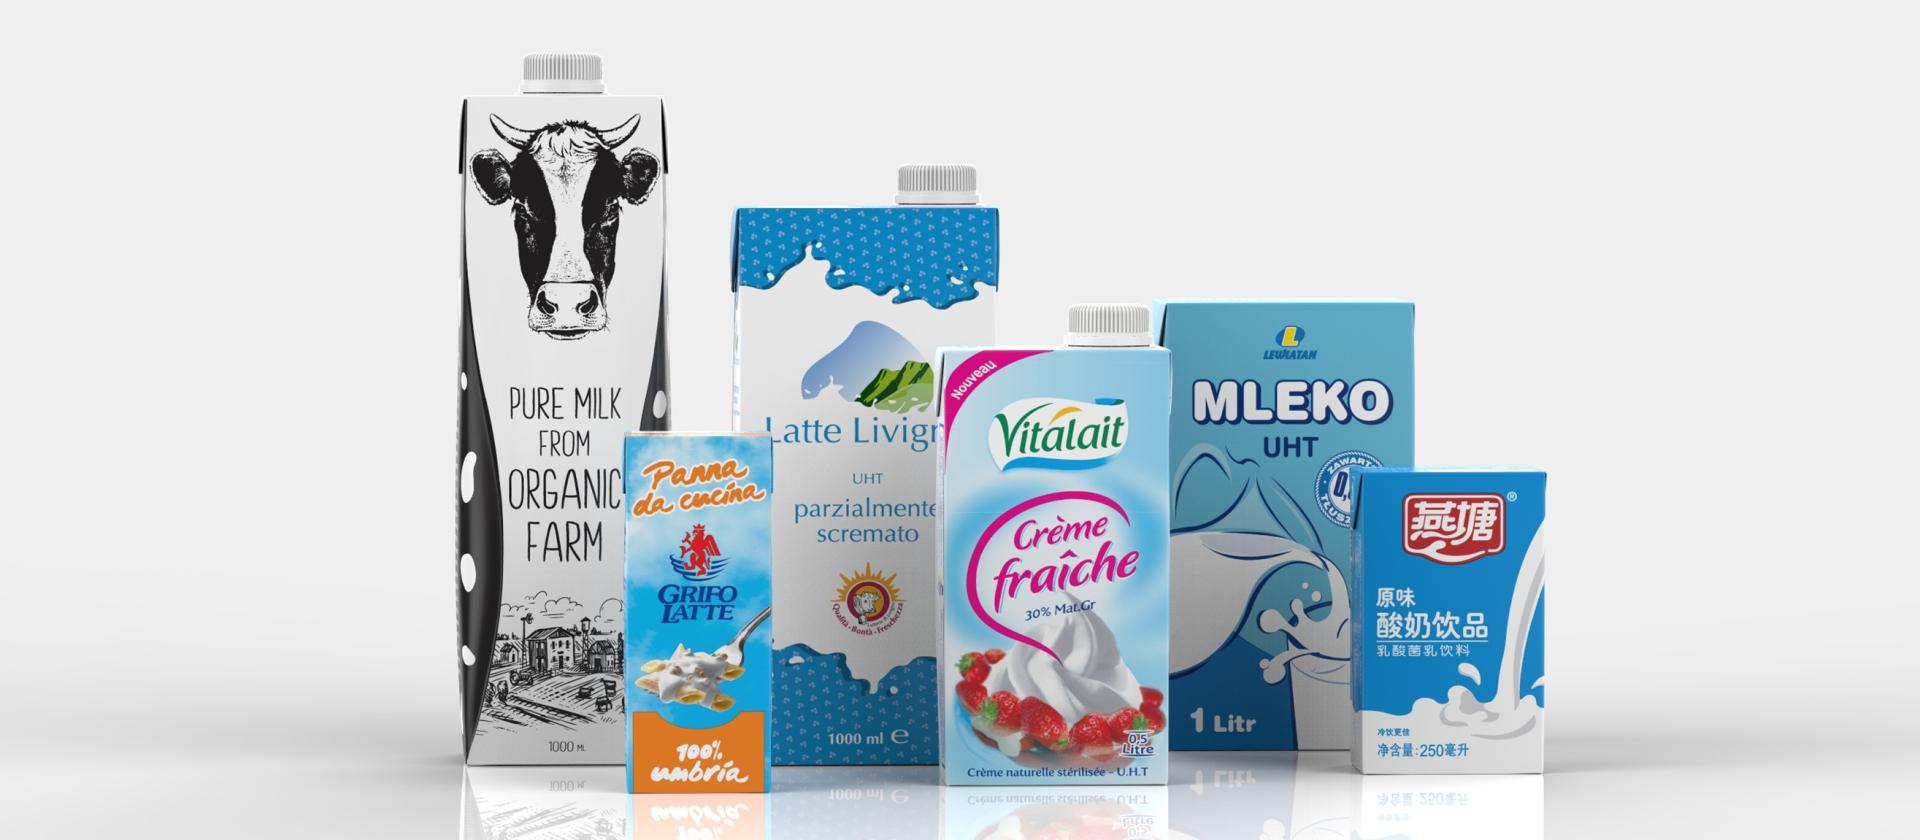 Latte UHT ed altri prodotti lattiero-caseari possono essere confezionati nelle confezioni asettiche in cartone di IPI